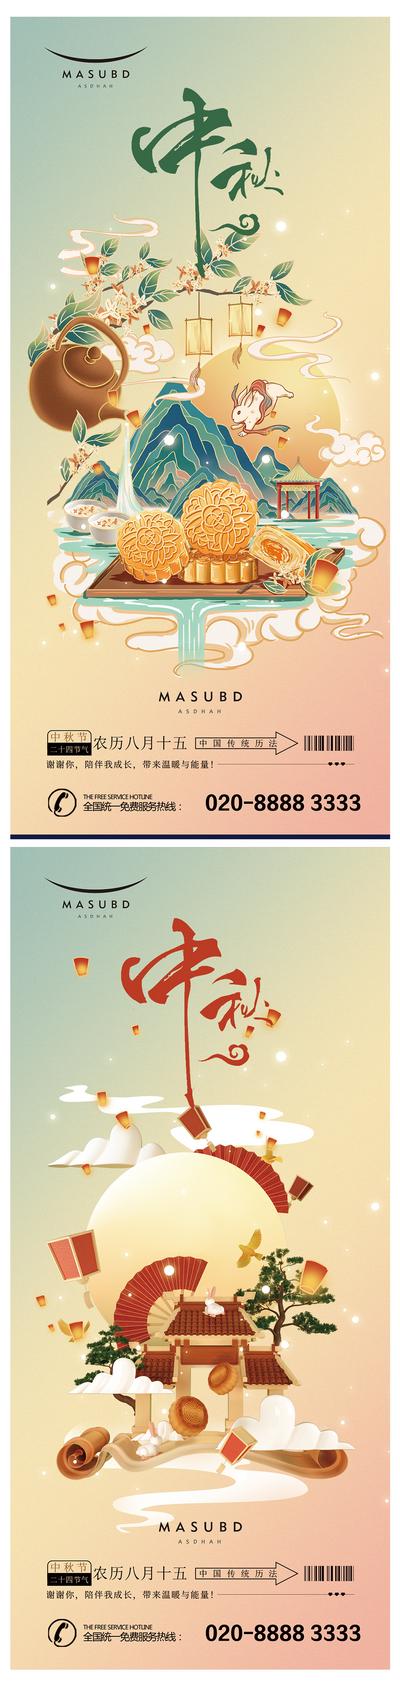 南门网 海报 中国传统节日 中秋节 月饼 插画 手绘